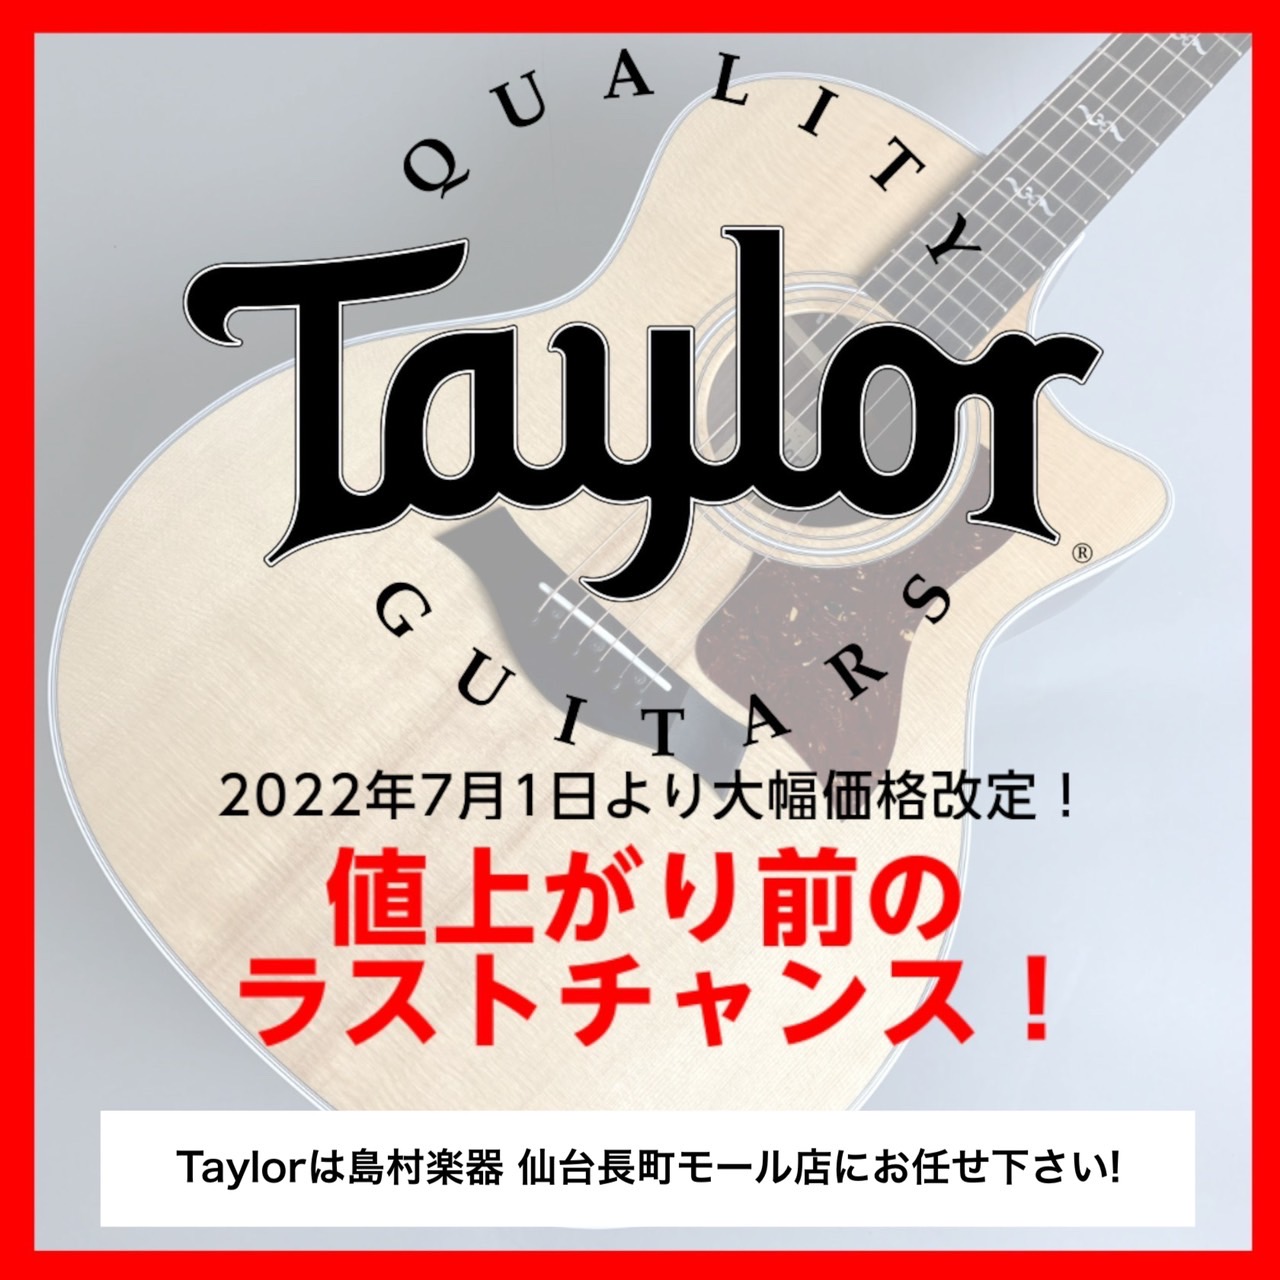 2022年7月1日より国内外で人気の高いアコースティックギターメーカー Tayloe(テイラー)が価格改定いたします。それに伴い現在店頭にあるTaylor各モデルが大幅な値上げとなります！是非、価格改定前のこのタイミングに狙っていたモデルをゲットしてはいかがでしょうか？勿論価格改定前であれば店頭にな […]